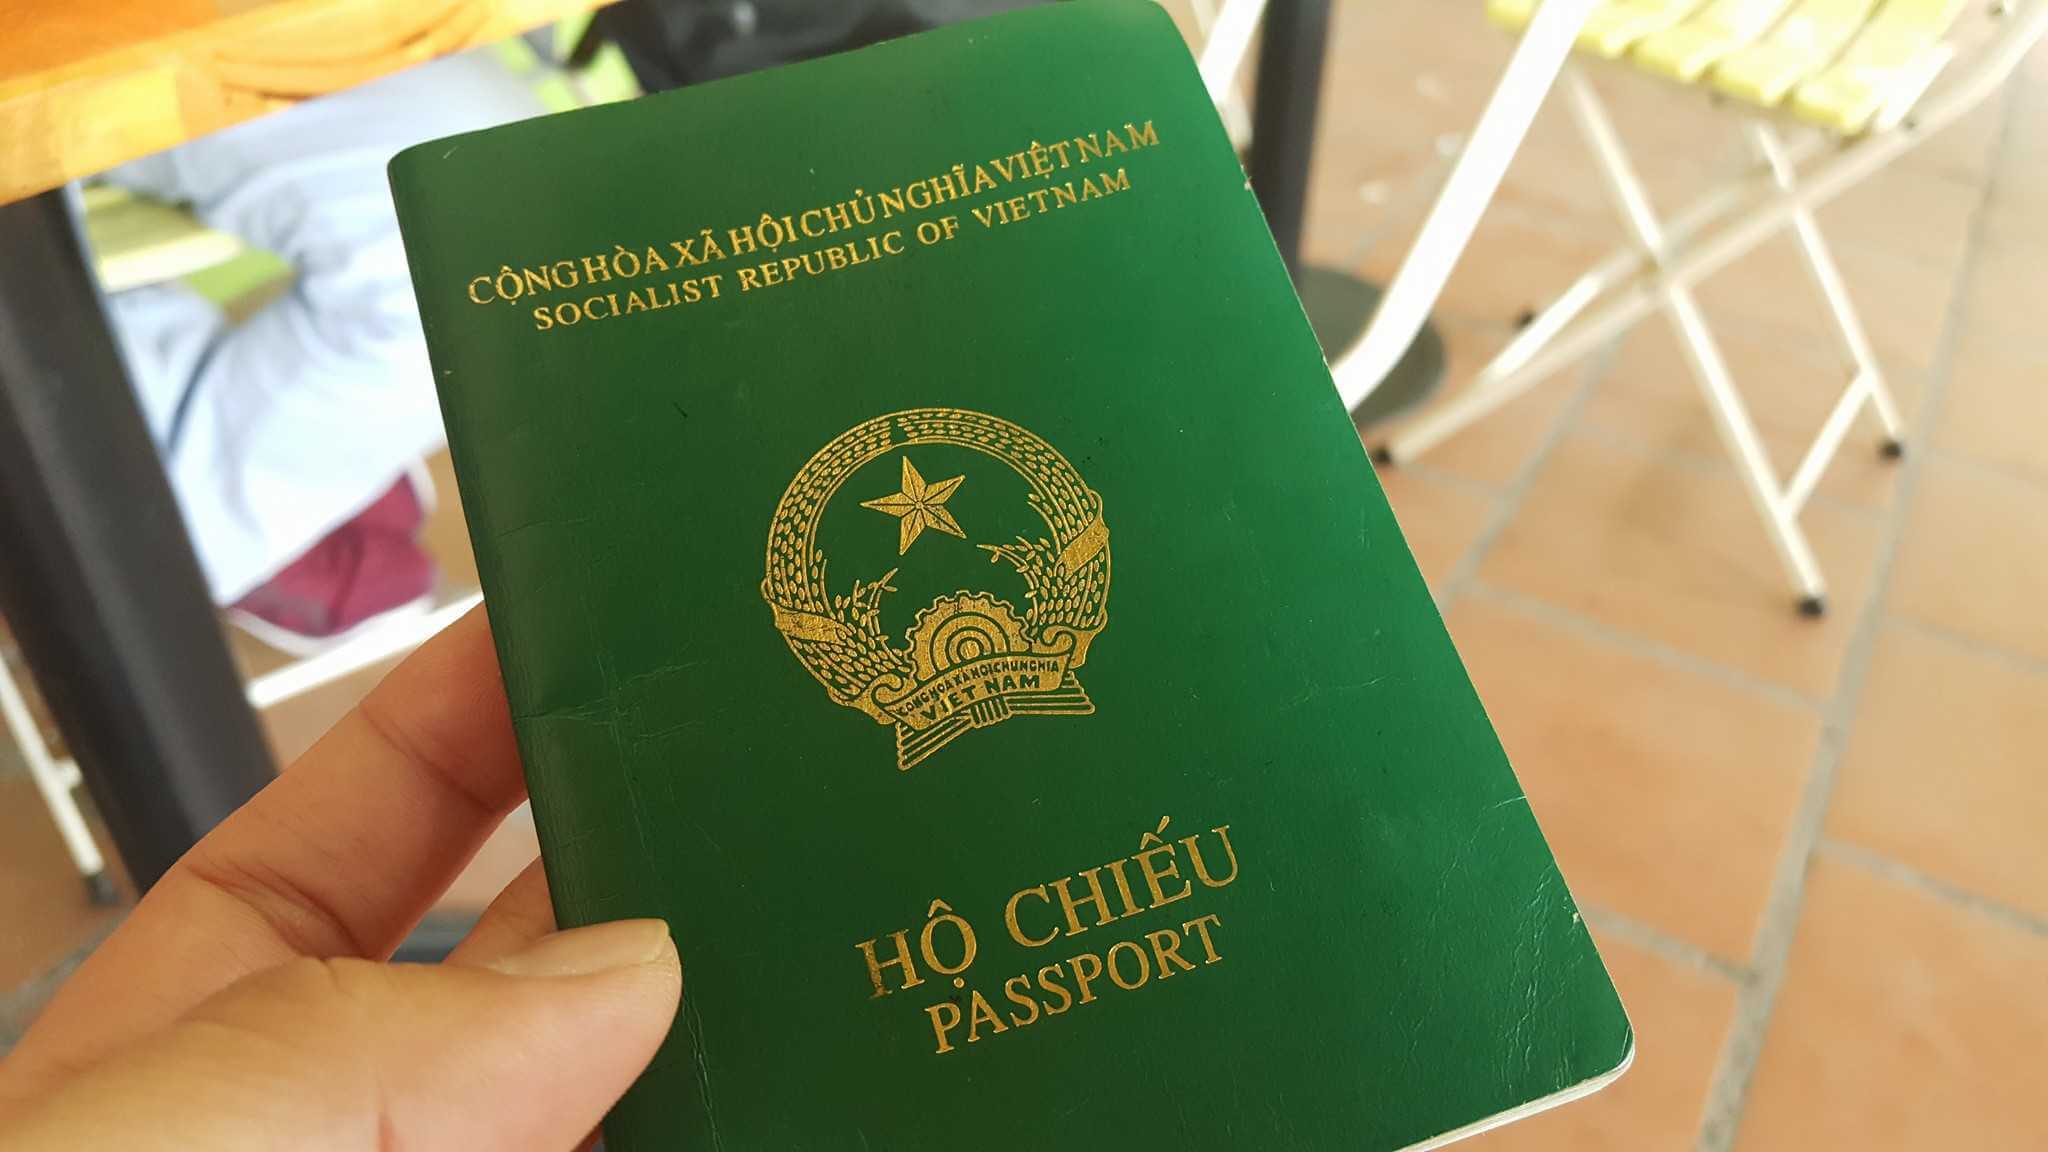 Hộ chiếu còn hạn dưới 6 tháng có nhập cảnh được không?